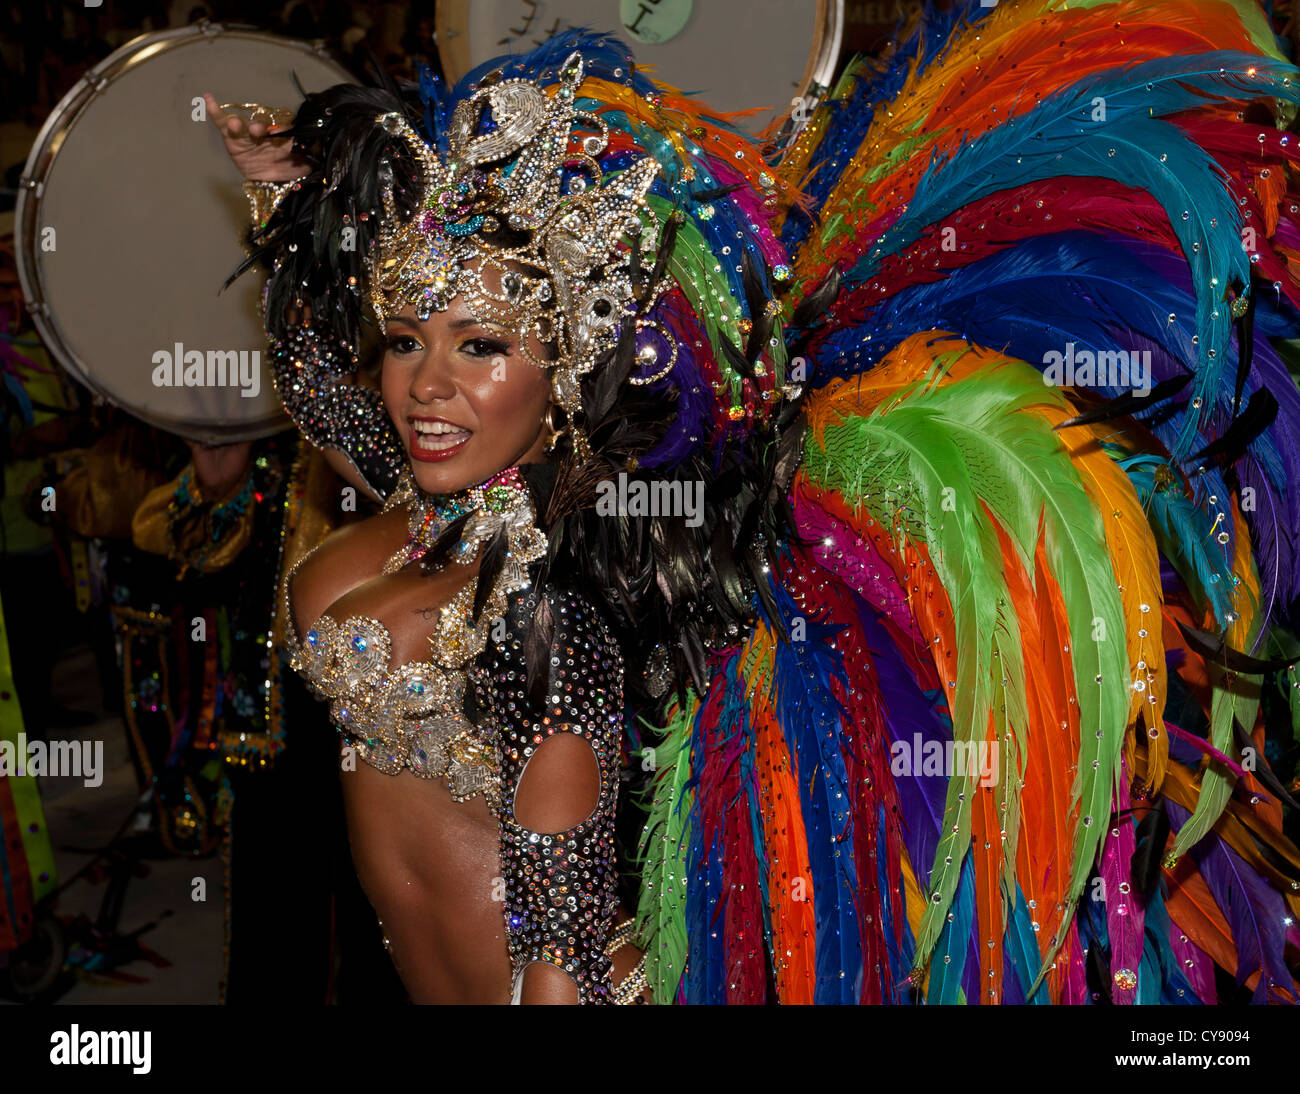 Femme dansant au cours de défilé de carnaval à Rio de Janeiro Brésil Sambadrome Banque D'Images